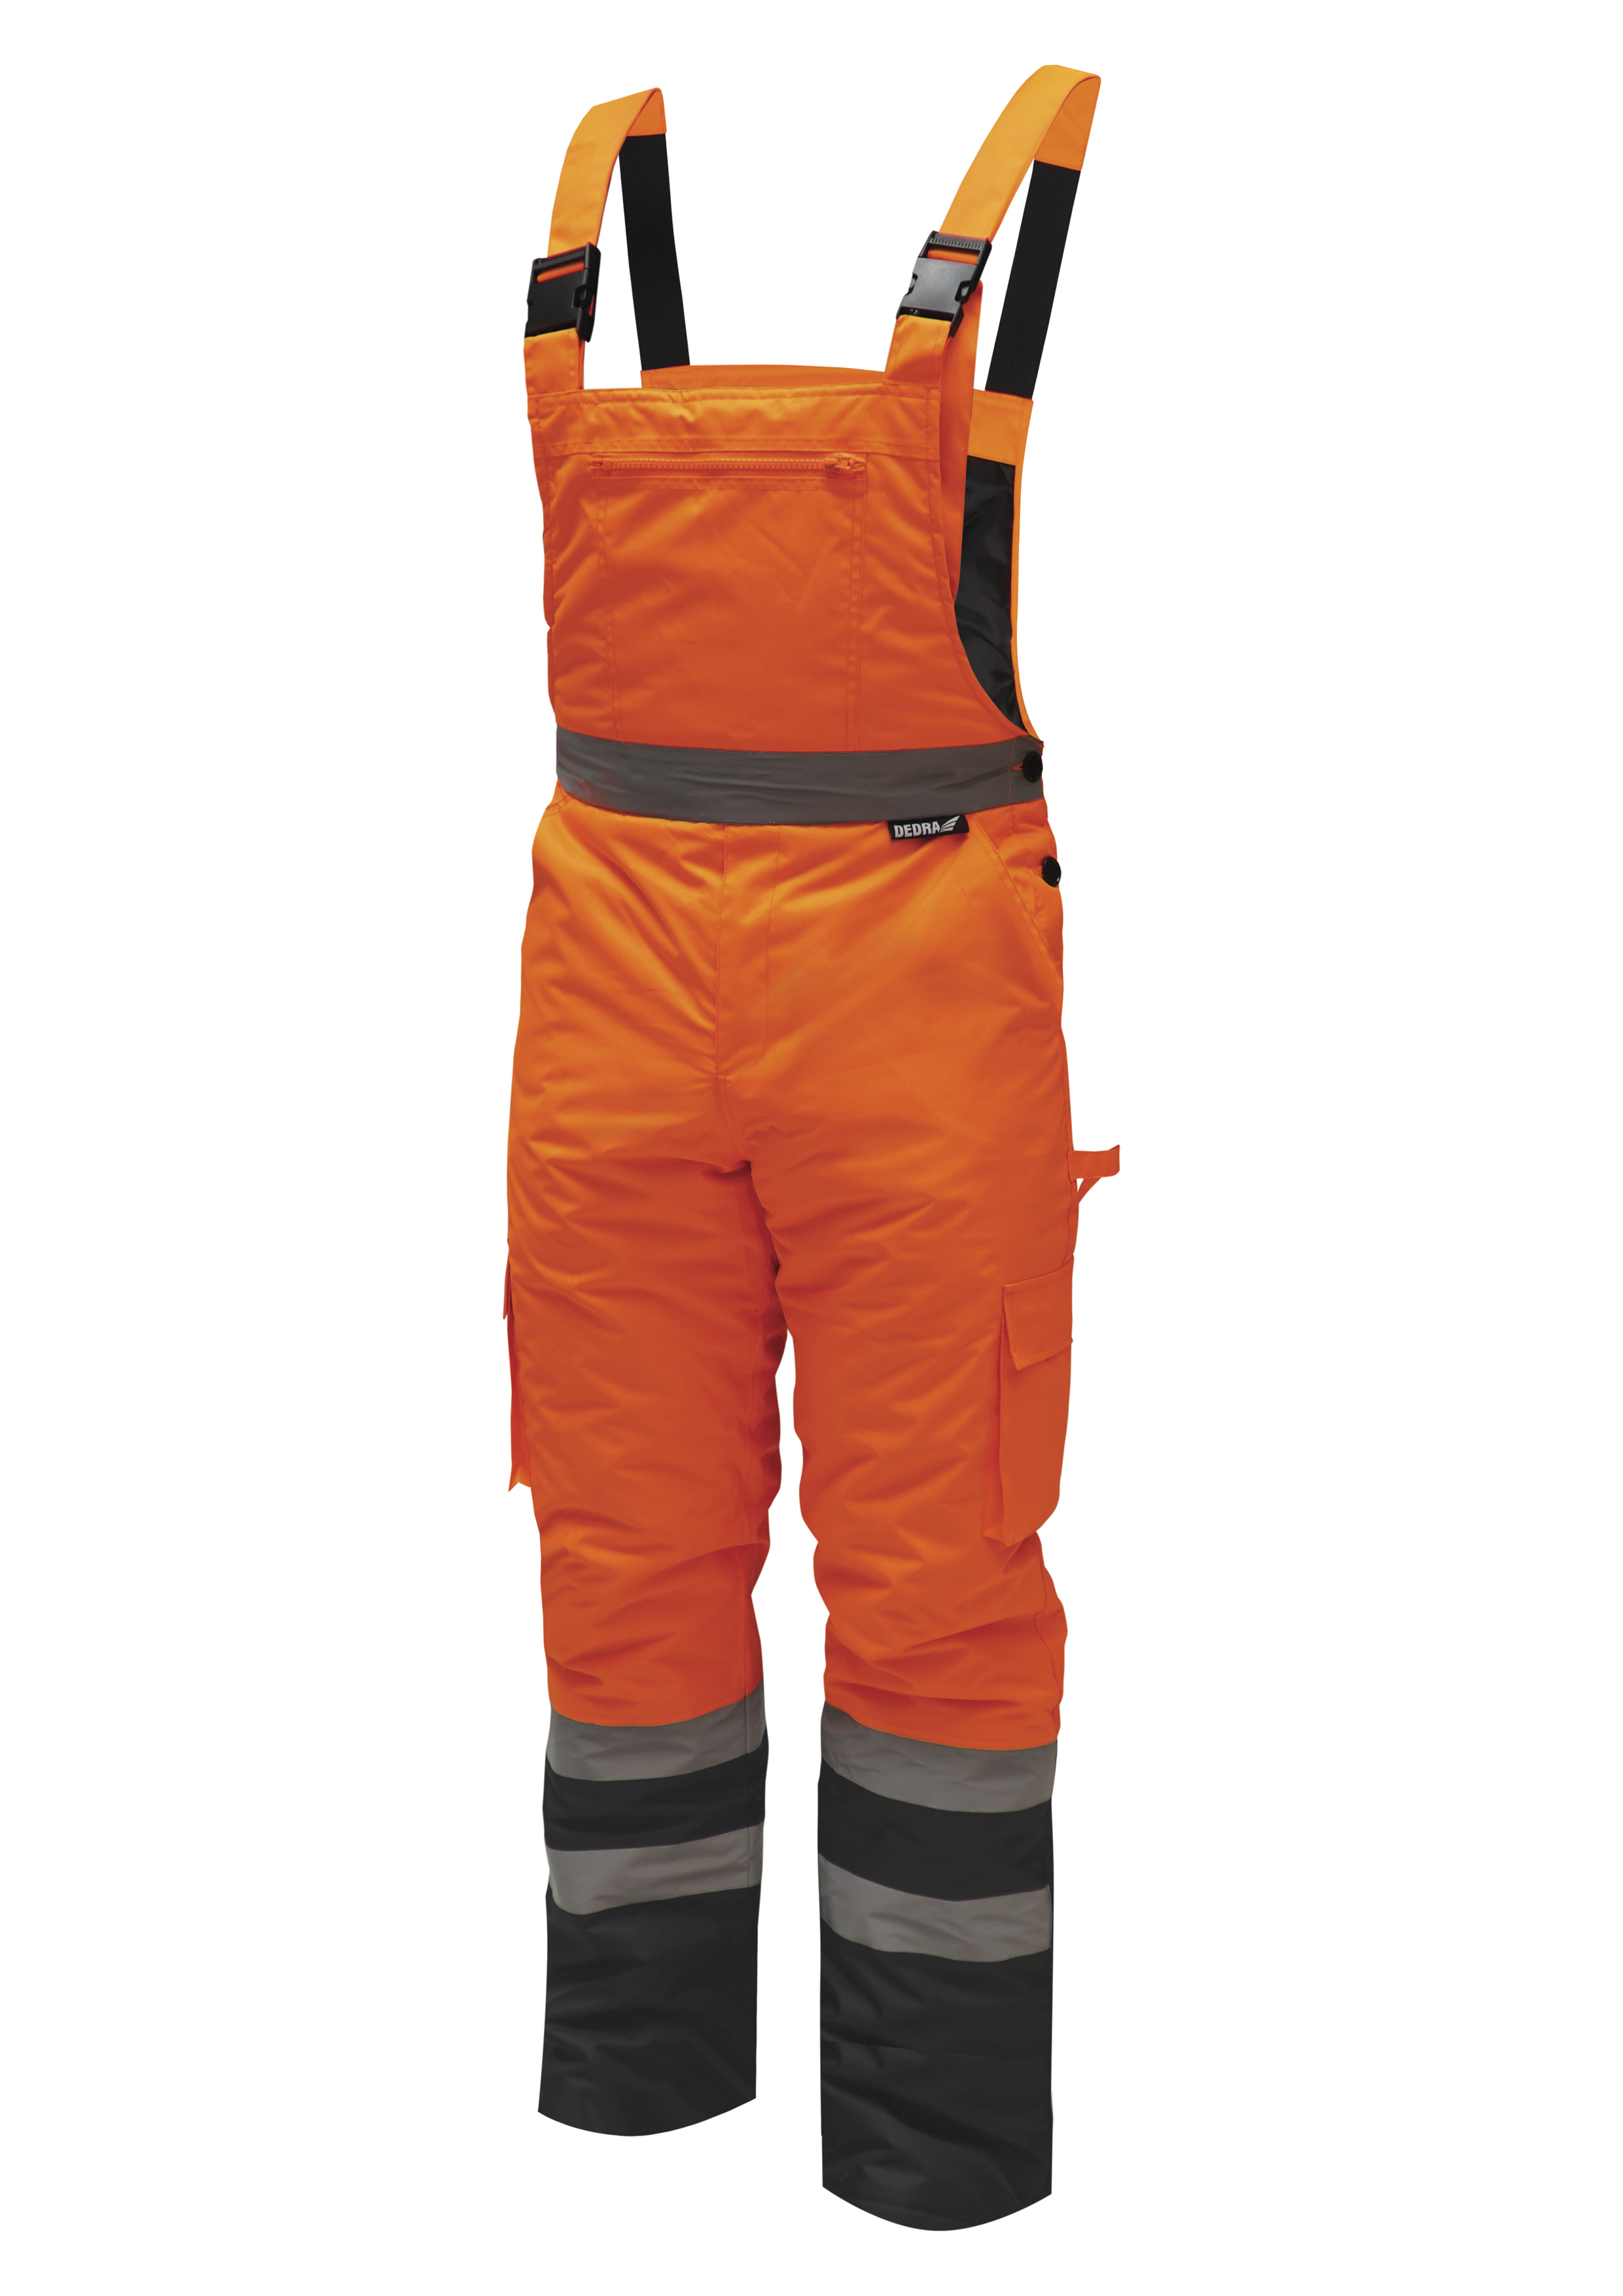 Reflexní zateplené kalhoty s laclem vel. M,oranžové DEDRA BH80SO2-M + Dárek, servis bez starostí v hodnotě 300Kč